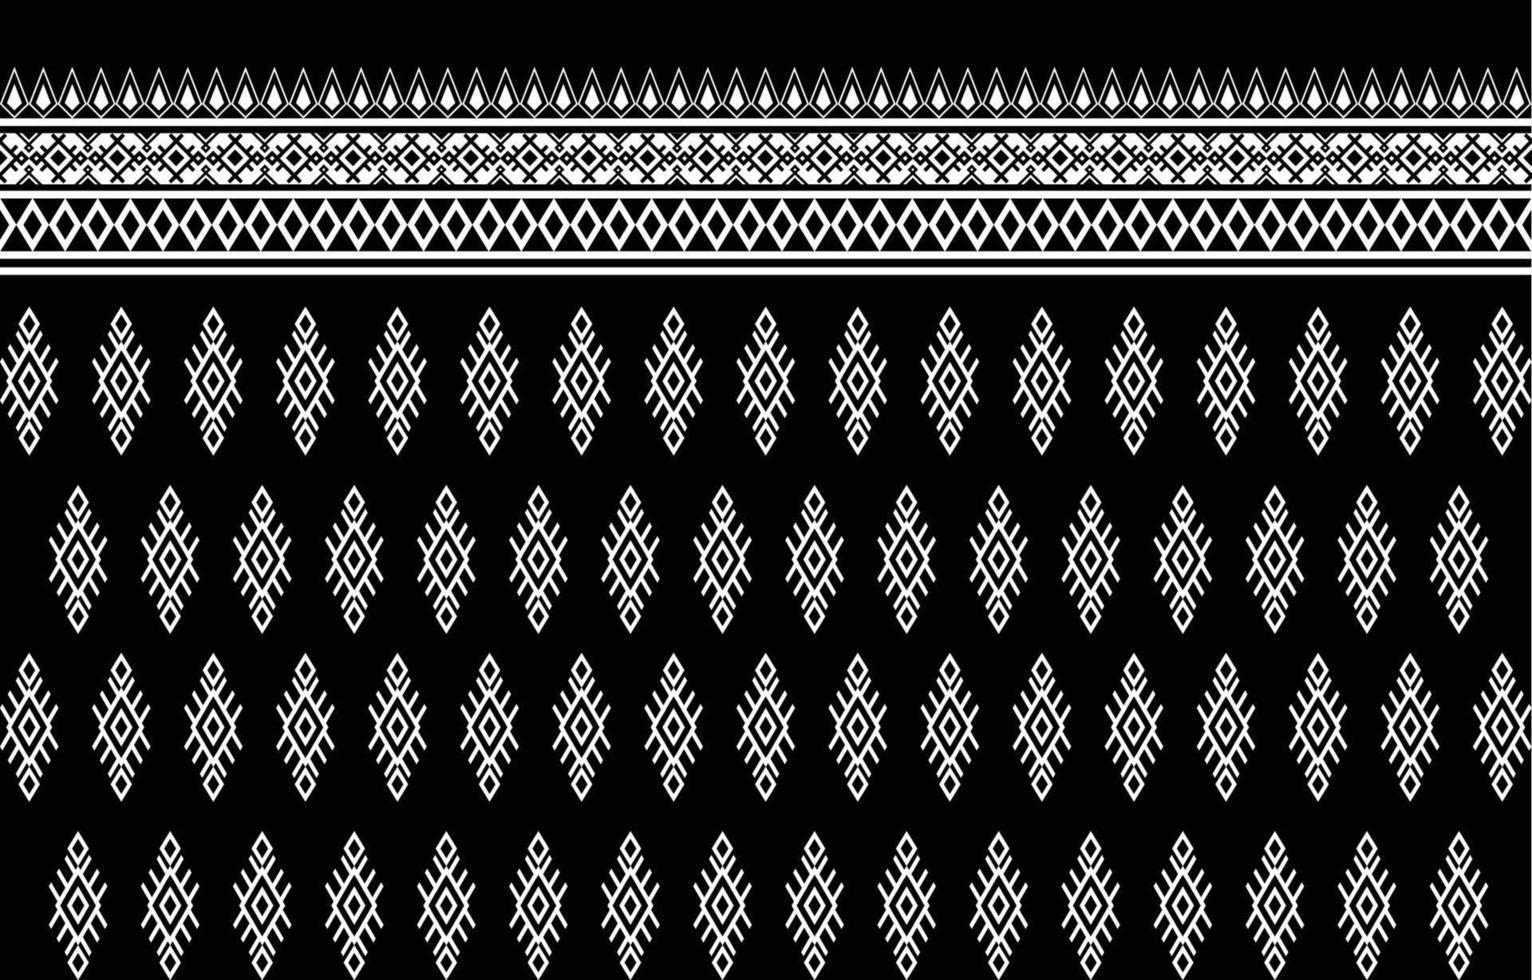 Amerikaans kleding stof patroon ontwerp. gebruik geometrie naar creëren een kleding stof patroon. ontwerp voor textiel industrie, achtergrond, tapijt, behang, kleding, batik, en etnisch kleding stof. vector